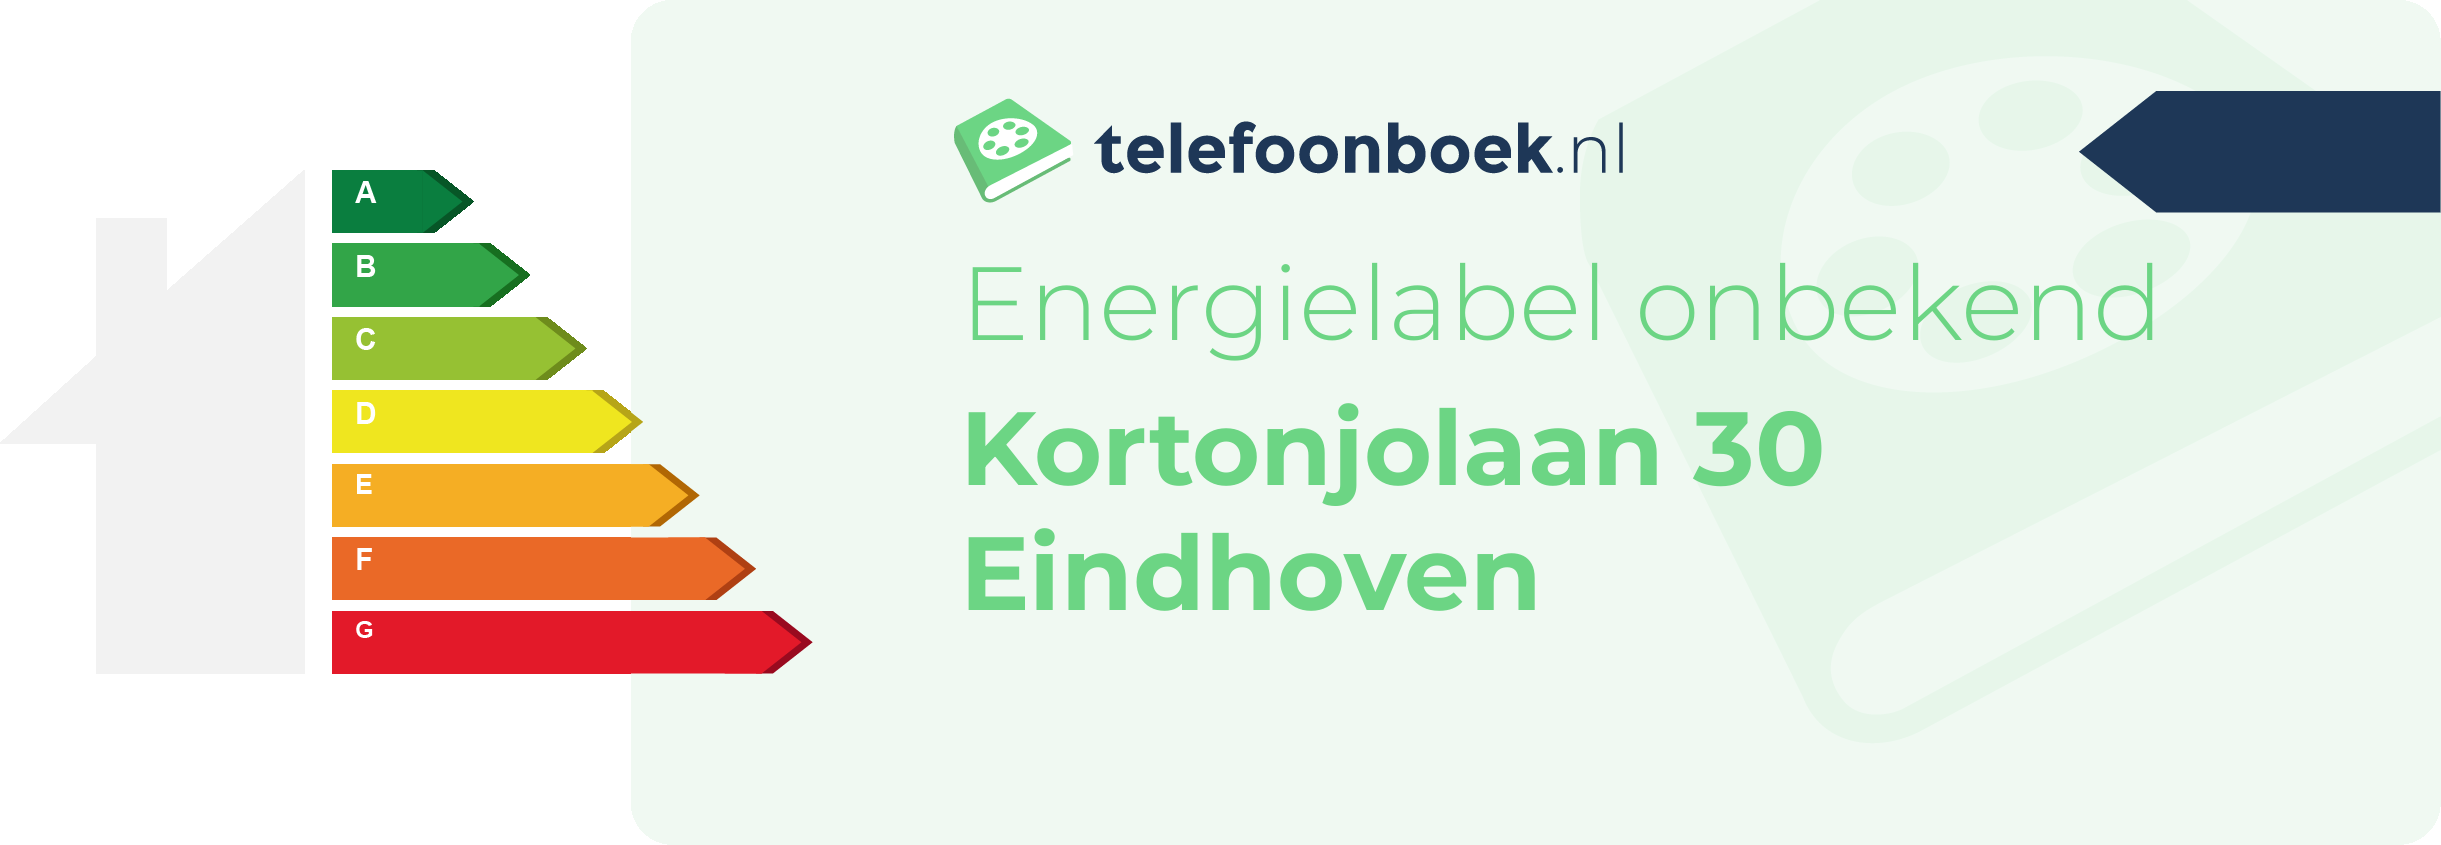 Energielabel Kortonjolaan 30 Eindhoven